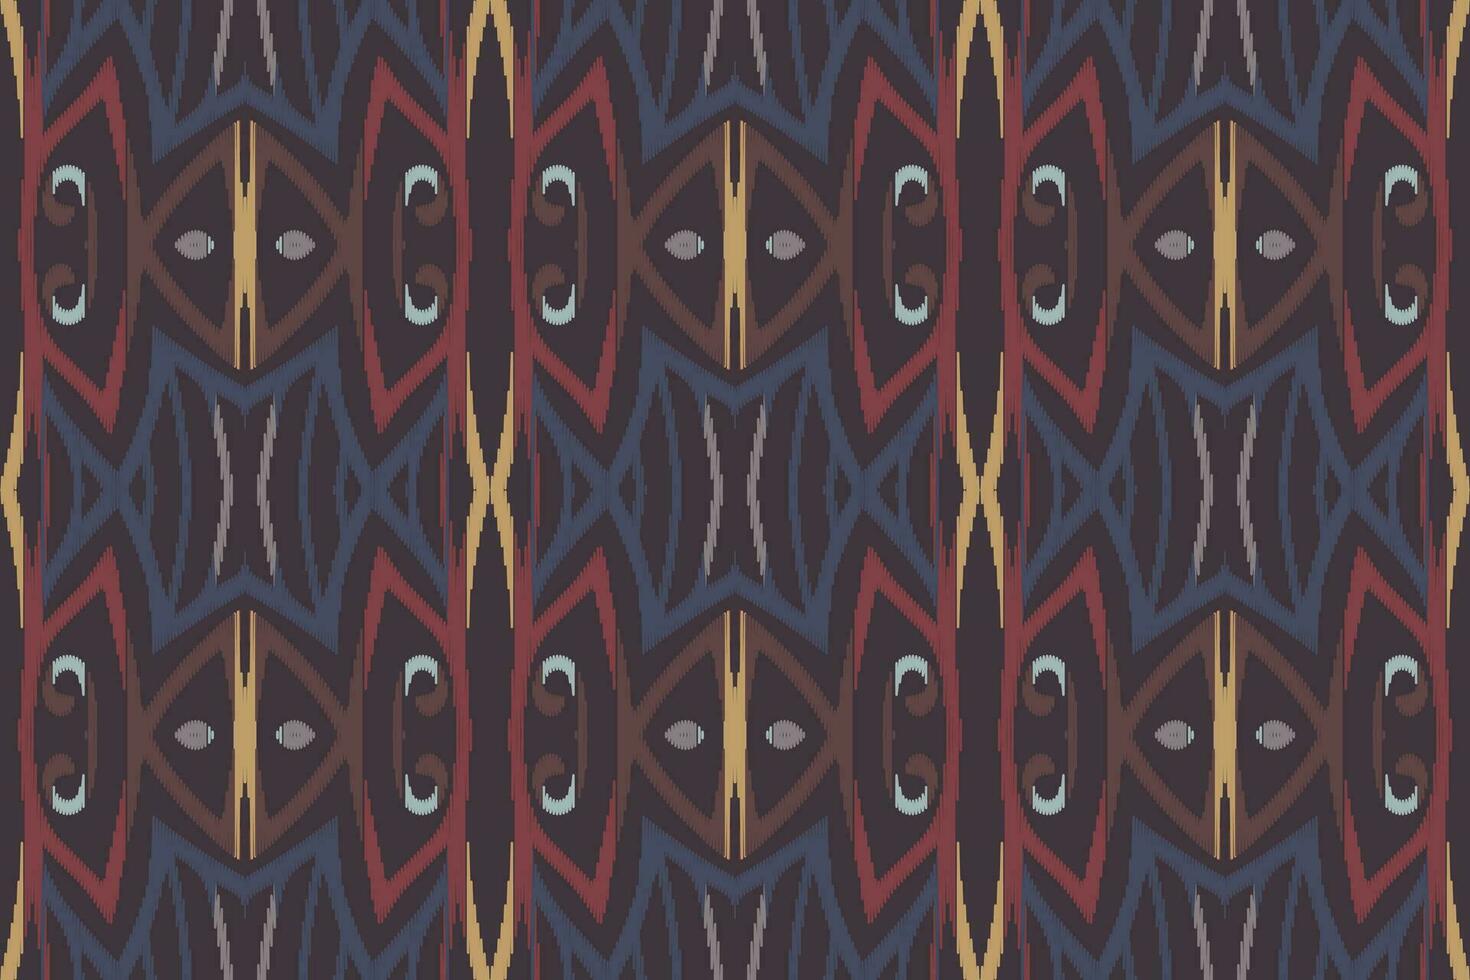 ikat damast paisley borduurwerk achtergrond. ikat structuur meetkundig etnisch oosters patroon traditioneel.azteken stijl abstract vector illustratie.ontwerp voor textuur, stof, kleding, verpakking, sarong.